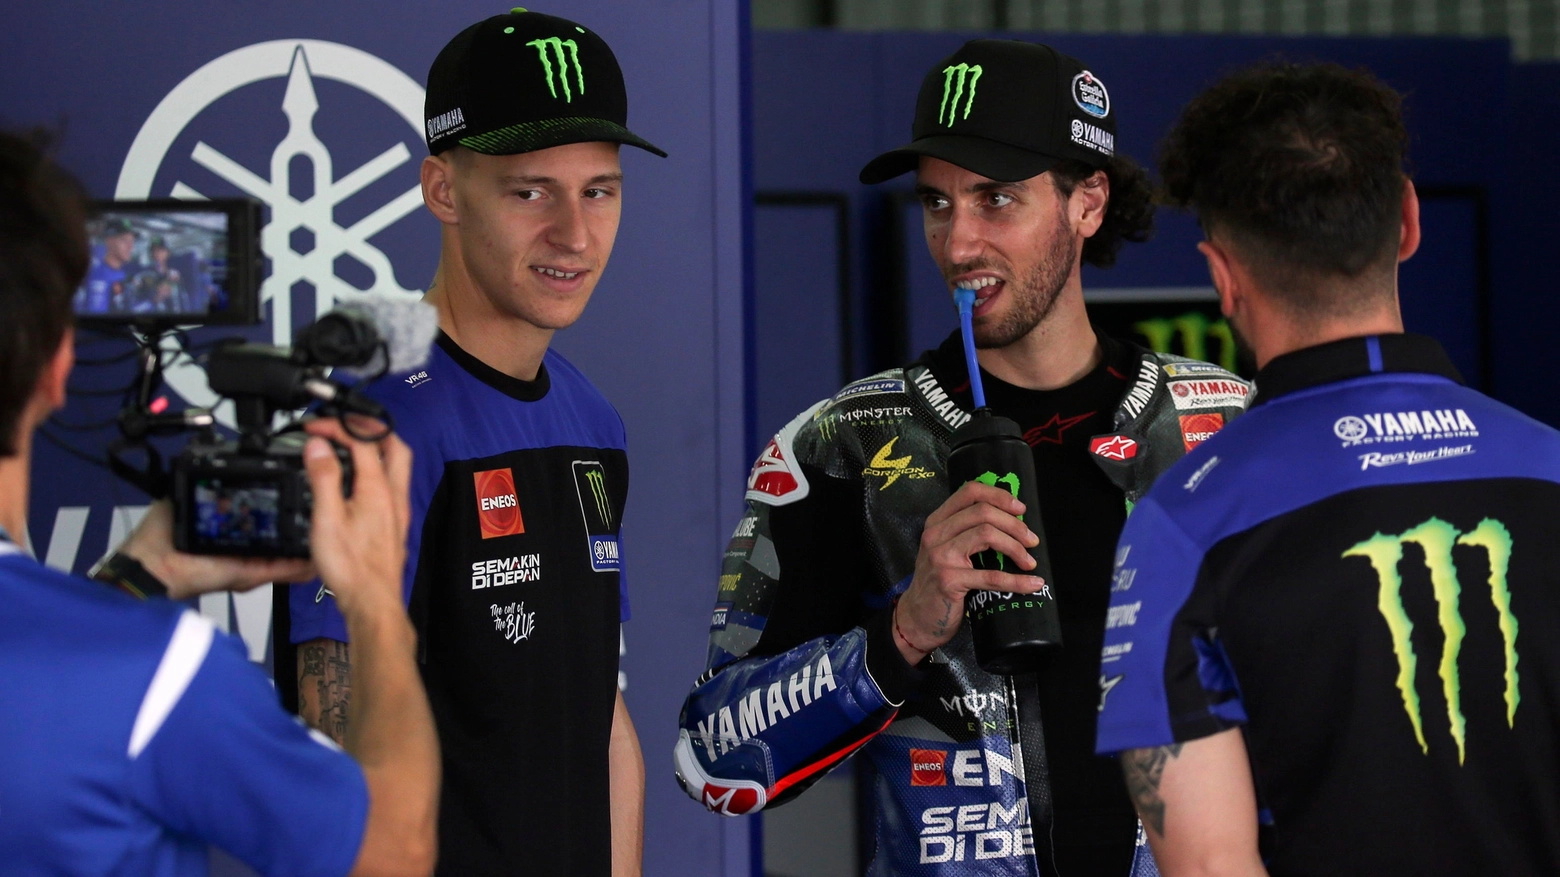 Il francese è al suo ultimo anno di contratto, Yamaha cerca di convincerlo con due tecnici provenienti da Ducati ma gli altri marchi incalzano